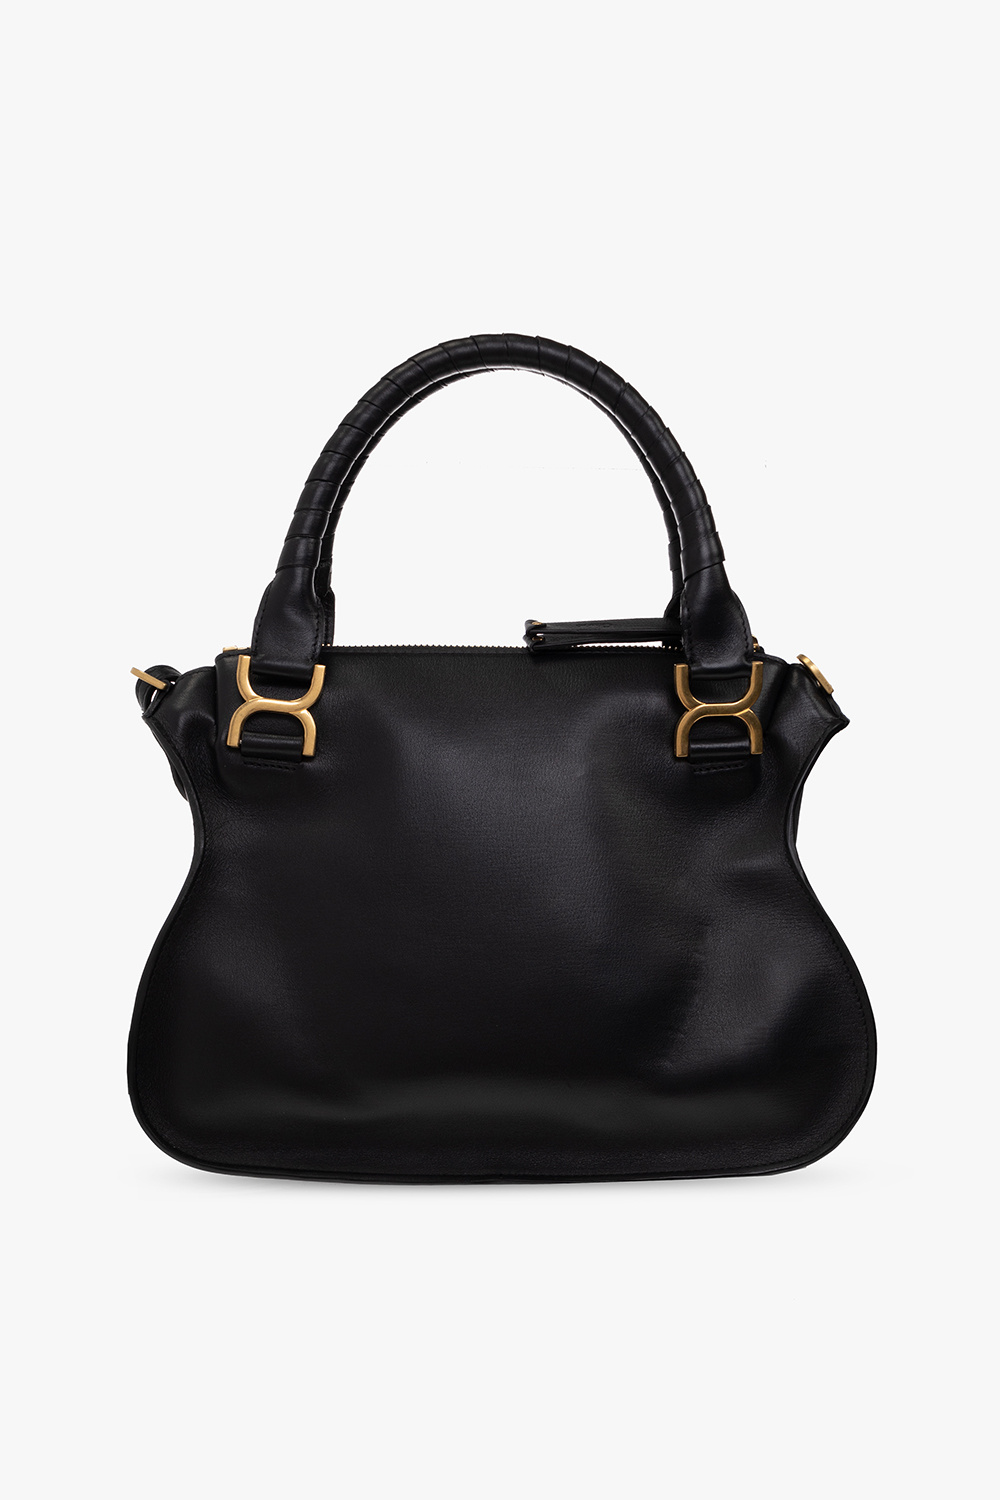 Chloé ‘Marcie Double’ shoulder bag